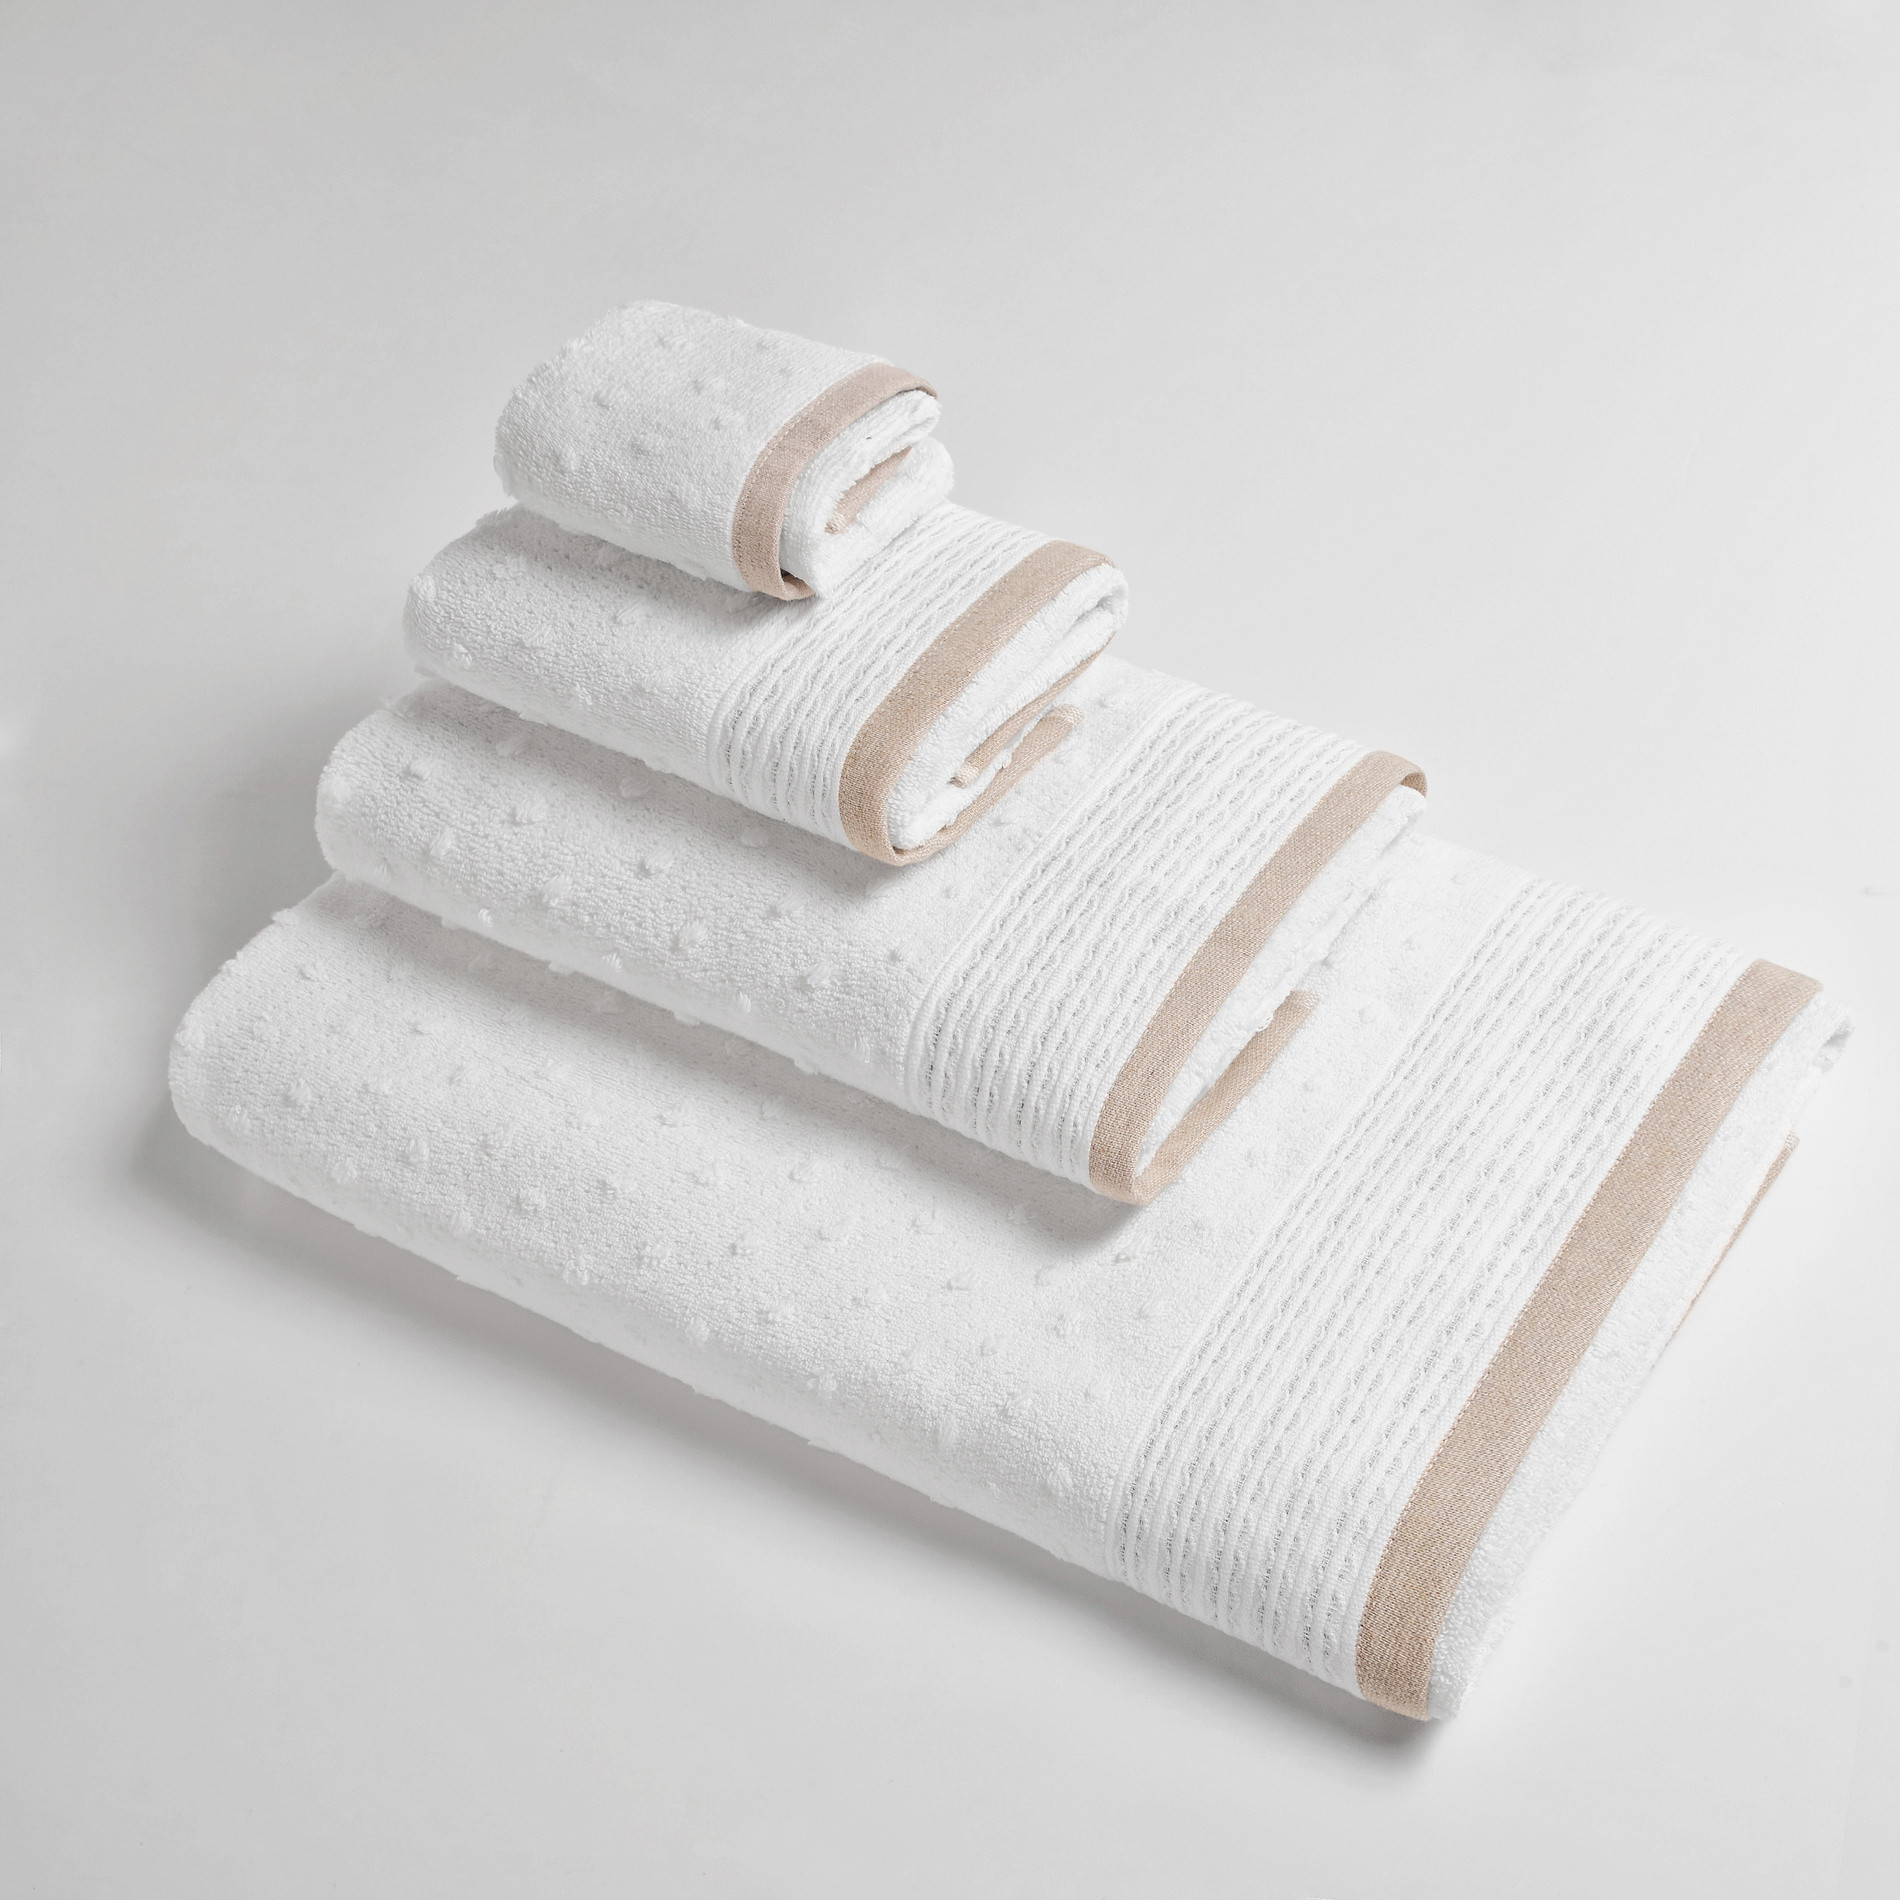 Asciugamano con lavorazione dots a rilievo Portofino, Bianco/Beige, large image number 0